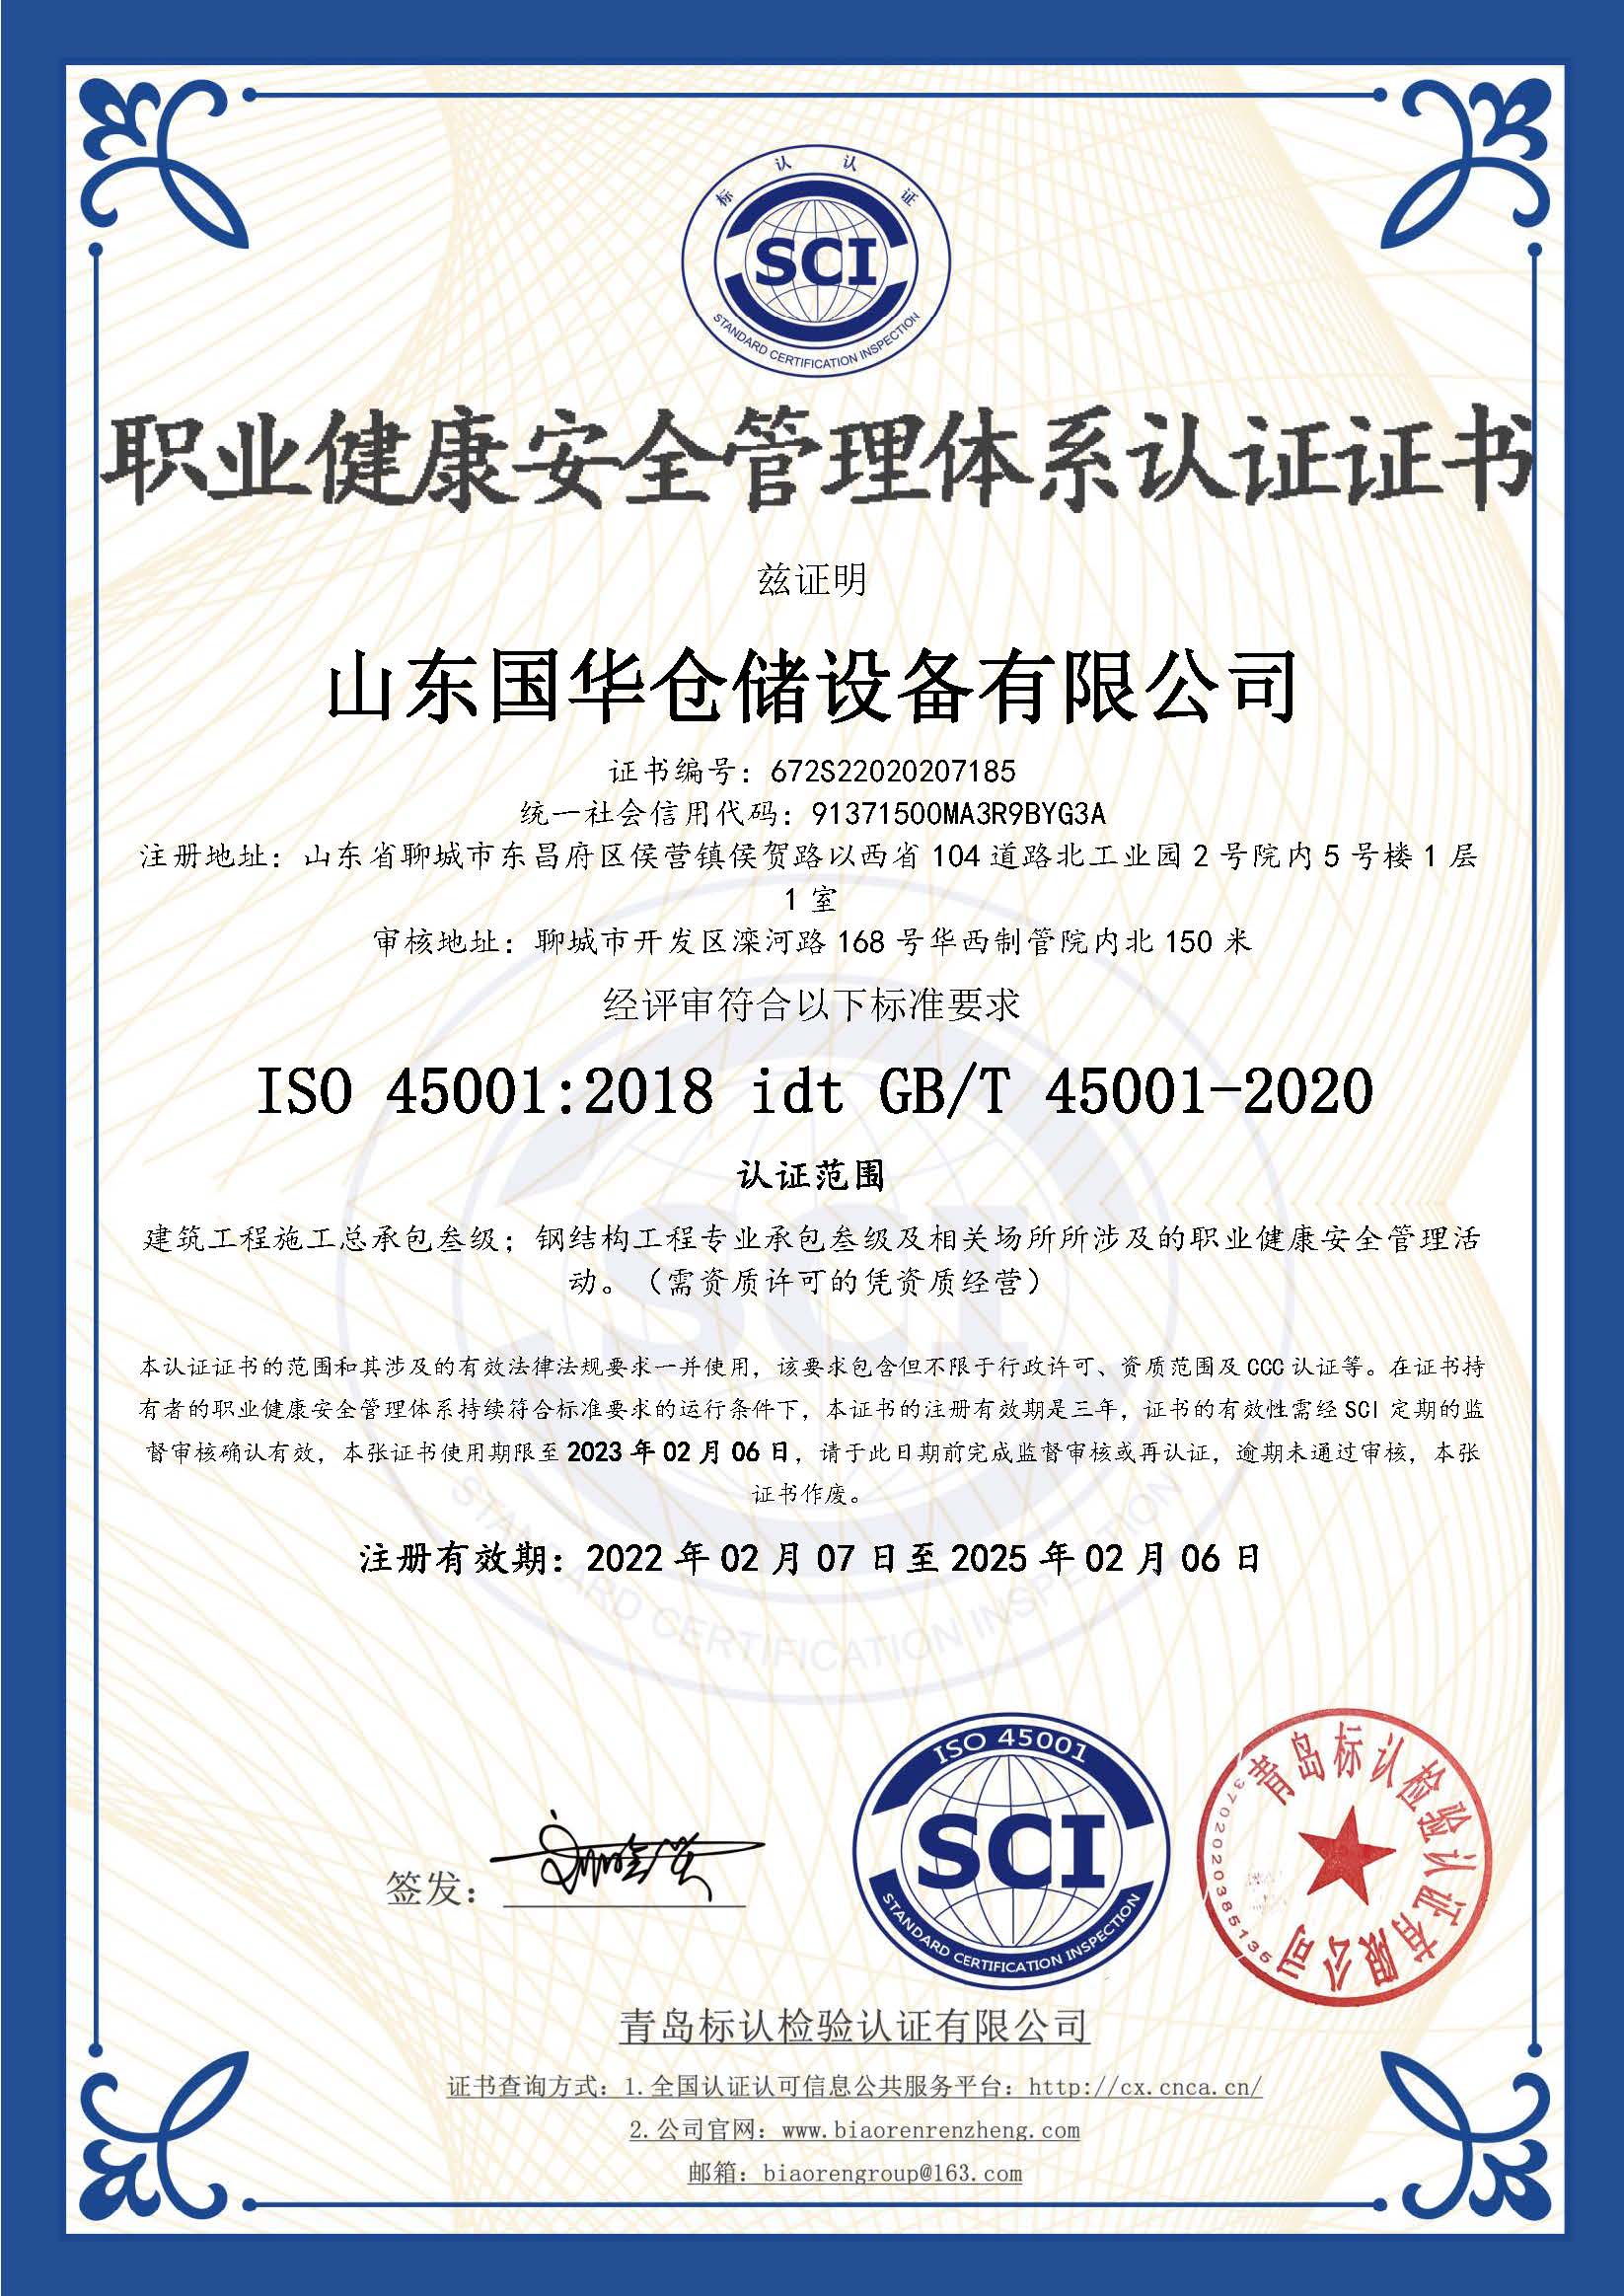 长沙钢板仓职业健康安全管理体系认证证书